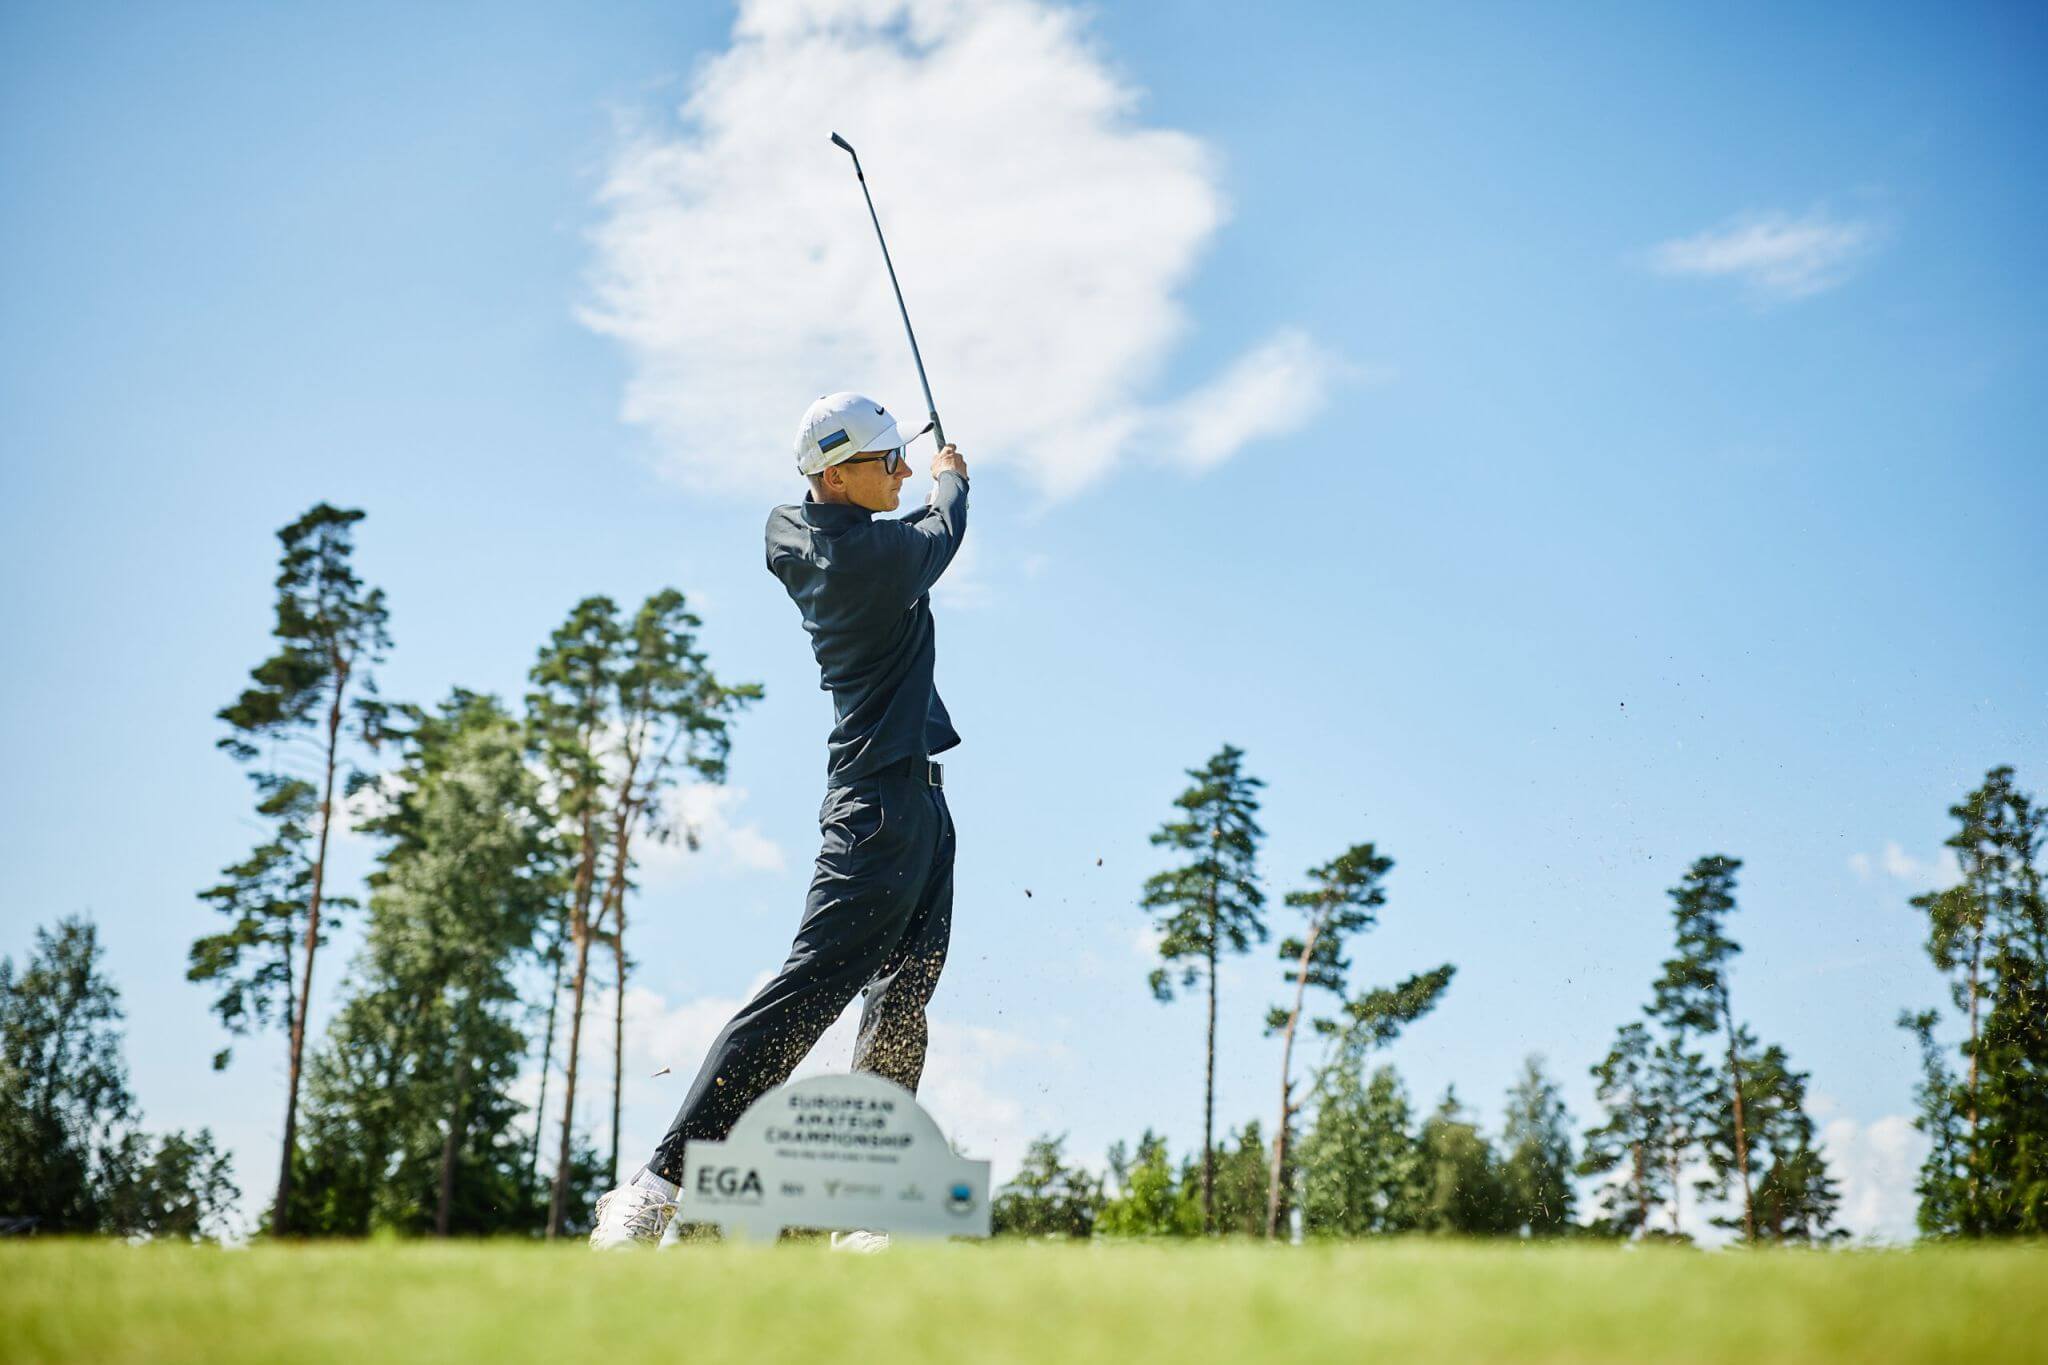   Richard Teder (Estonian Golf & Country Club) võistles esmakordselt Lytham Trophyl, mis on tavapäraselt Euroopas peetavatest amatöörgolfi võistlustest tugevuse